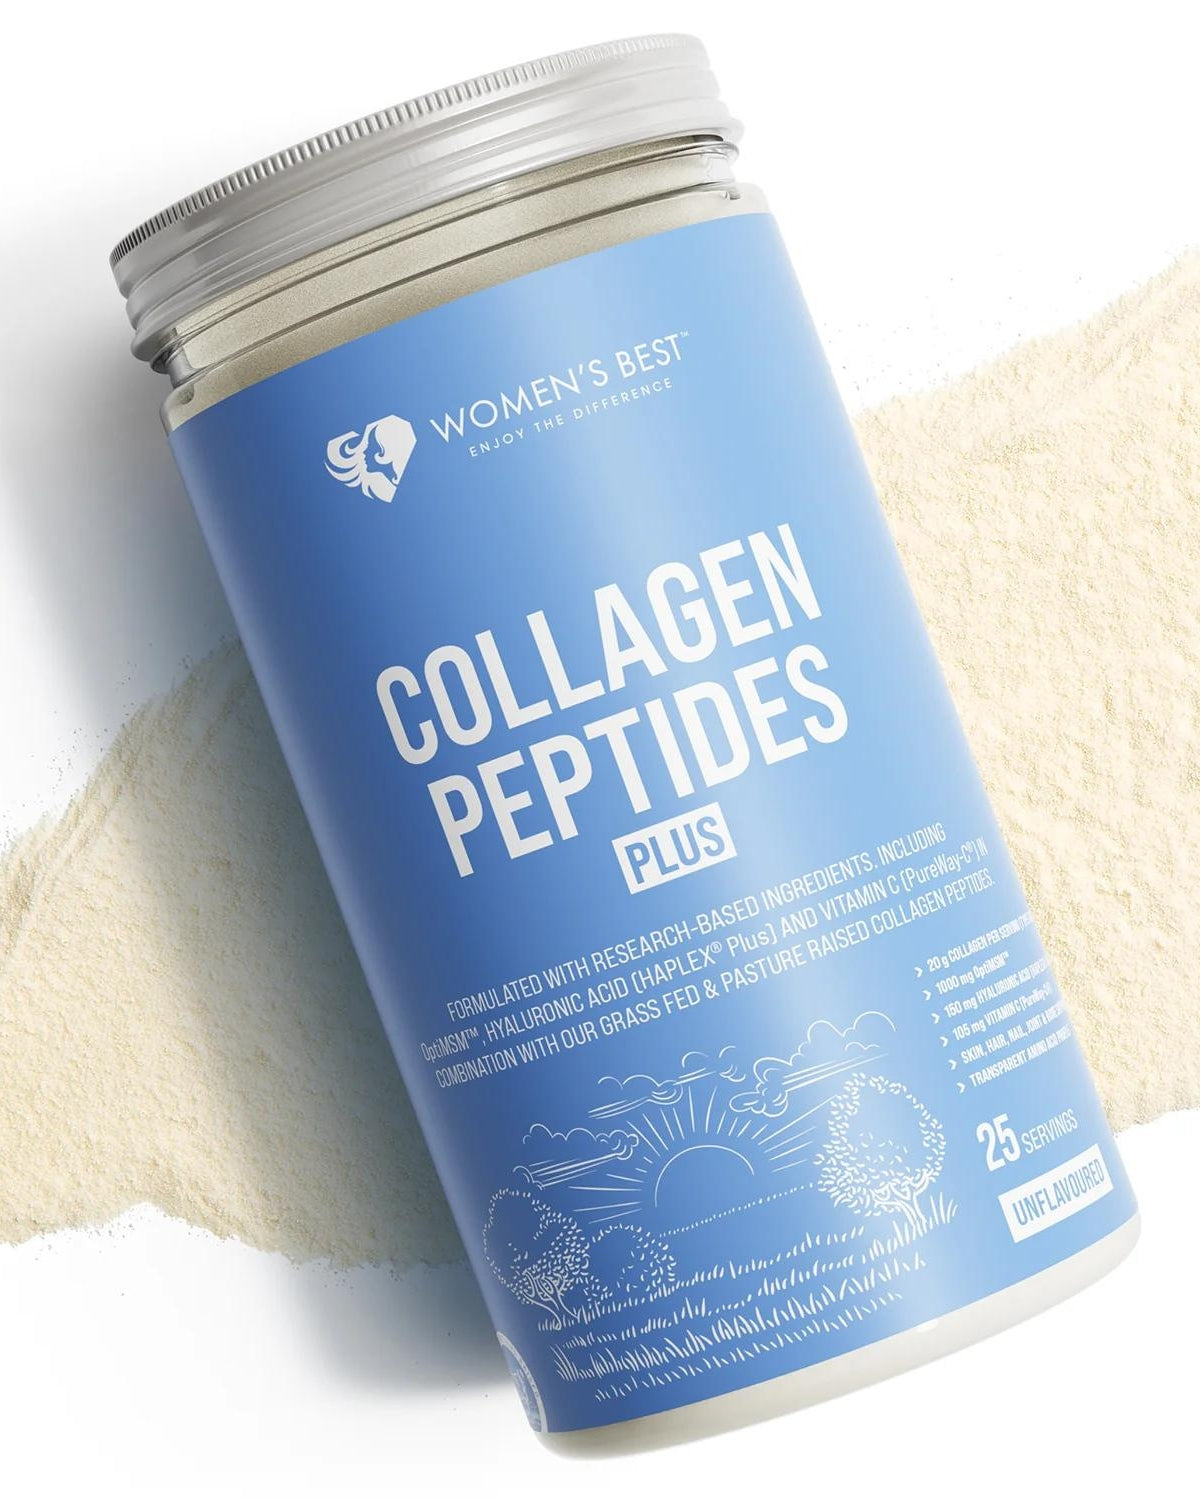 Collagen Peptides Plus+, 531g, Women's Best